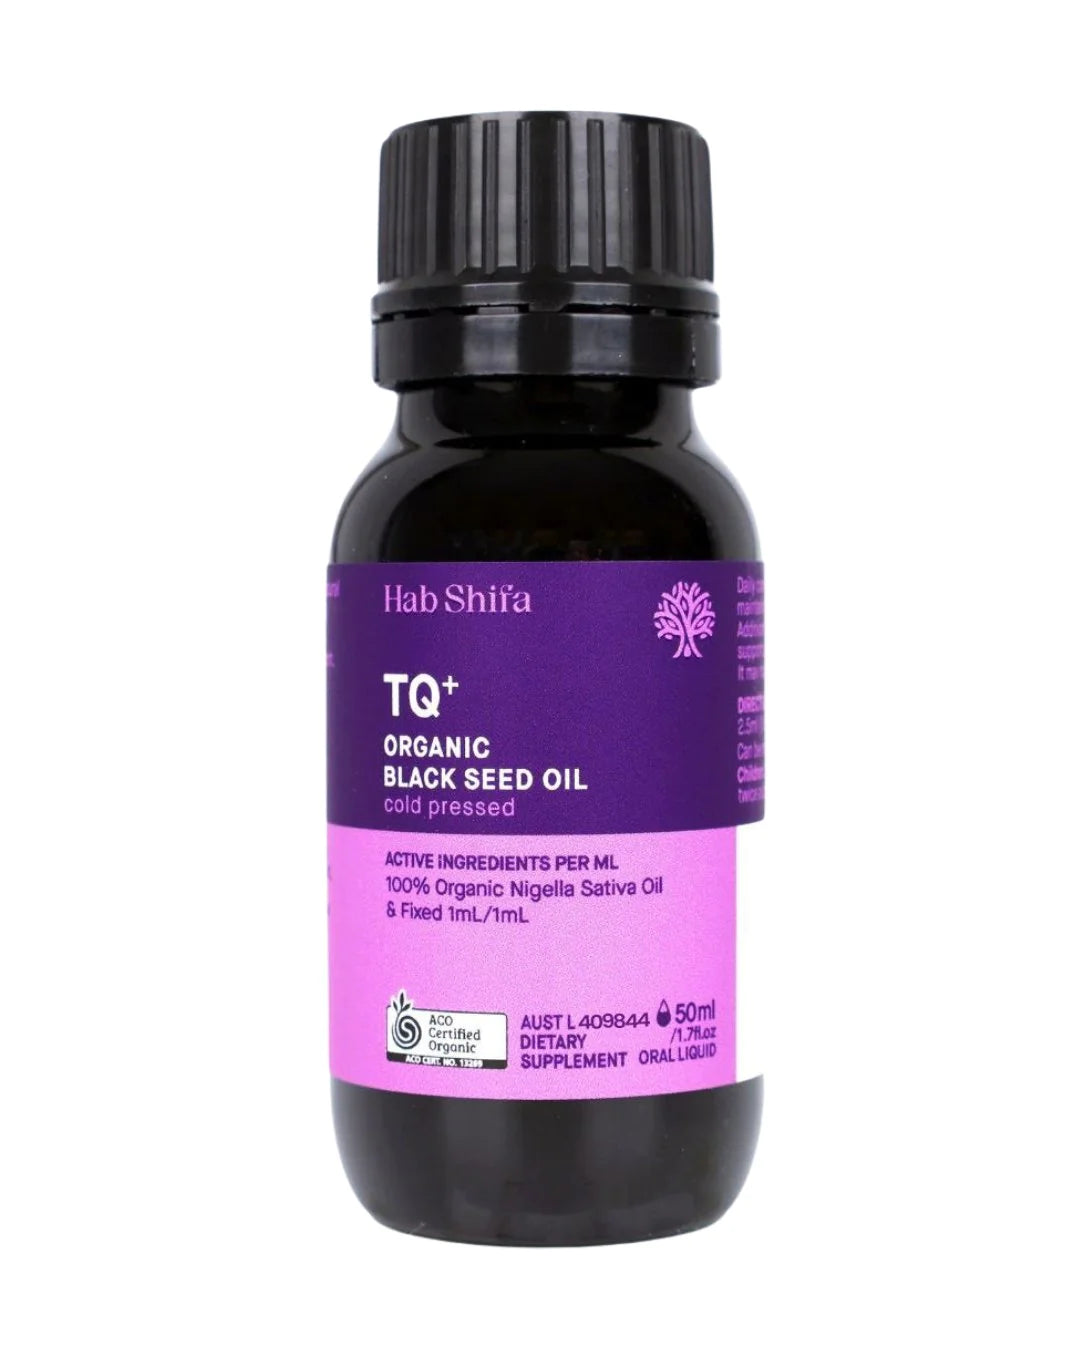 HAB SHIFA TQ+ Organic Black Seed Oil 50ml